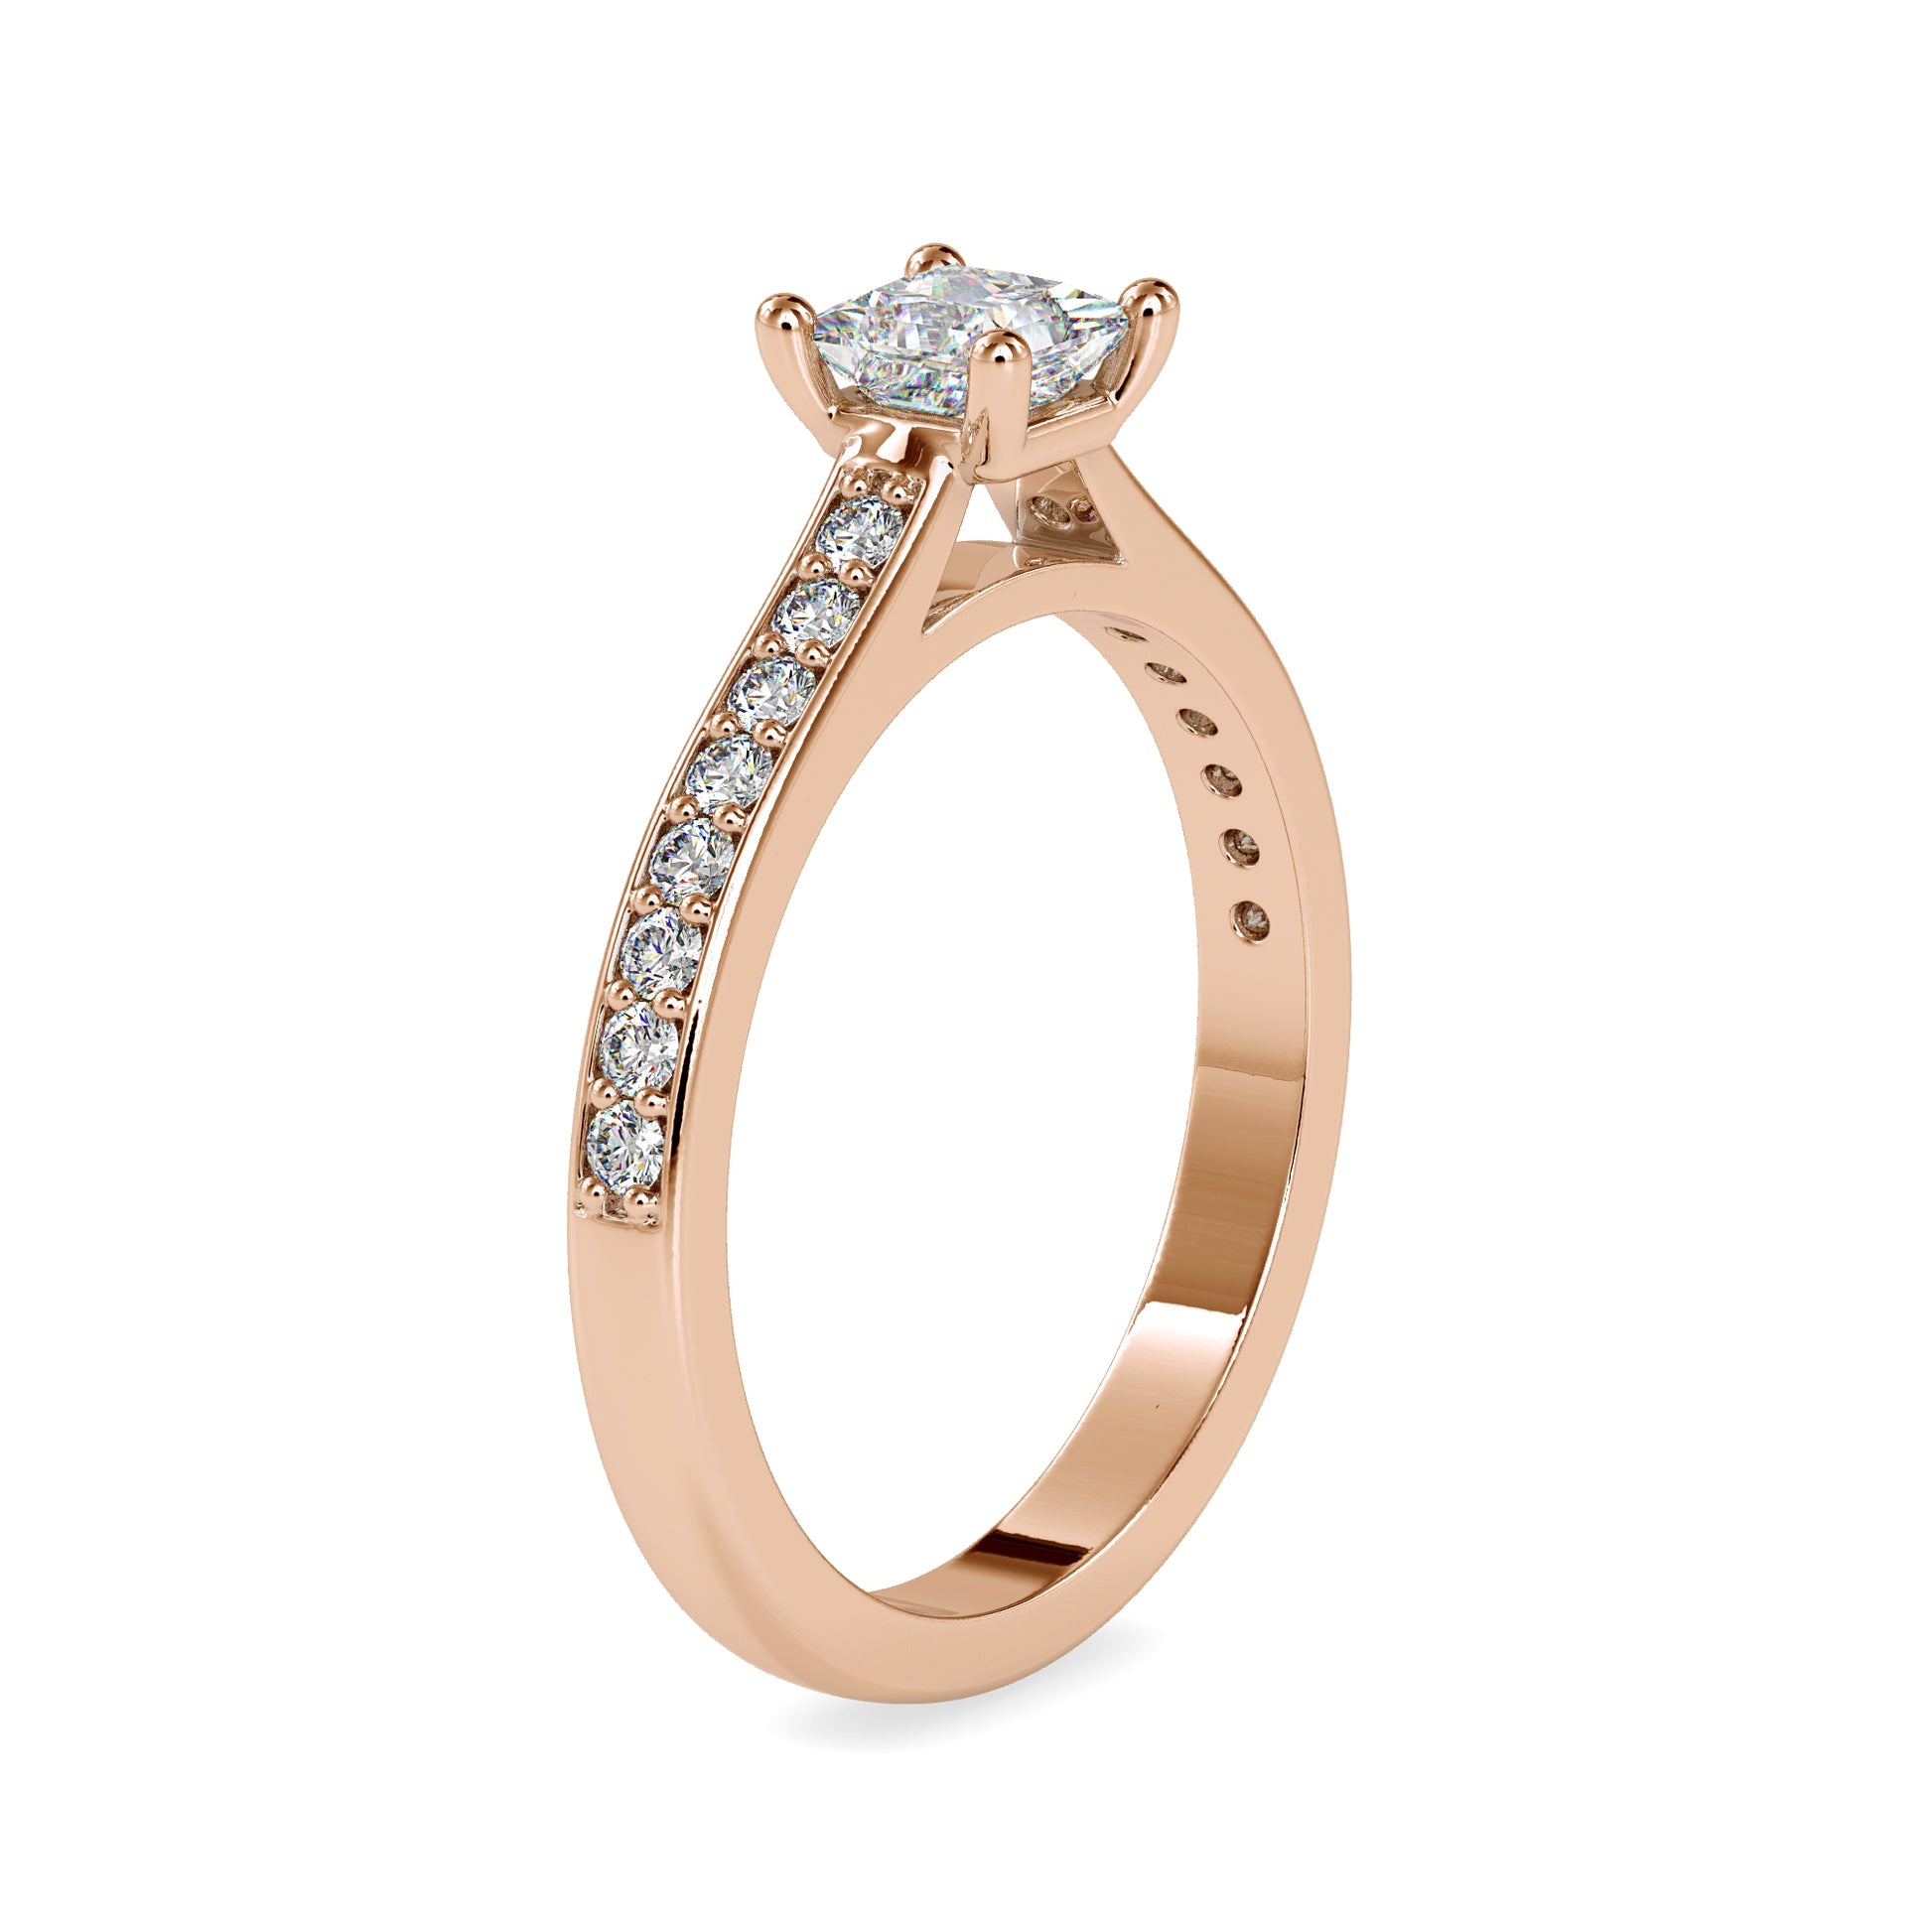 The Aphrodite Ring Moissanite Diamond